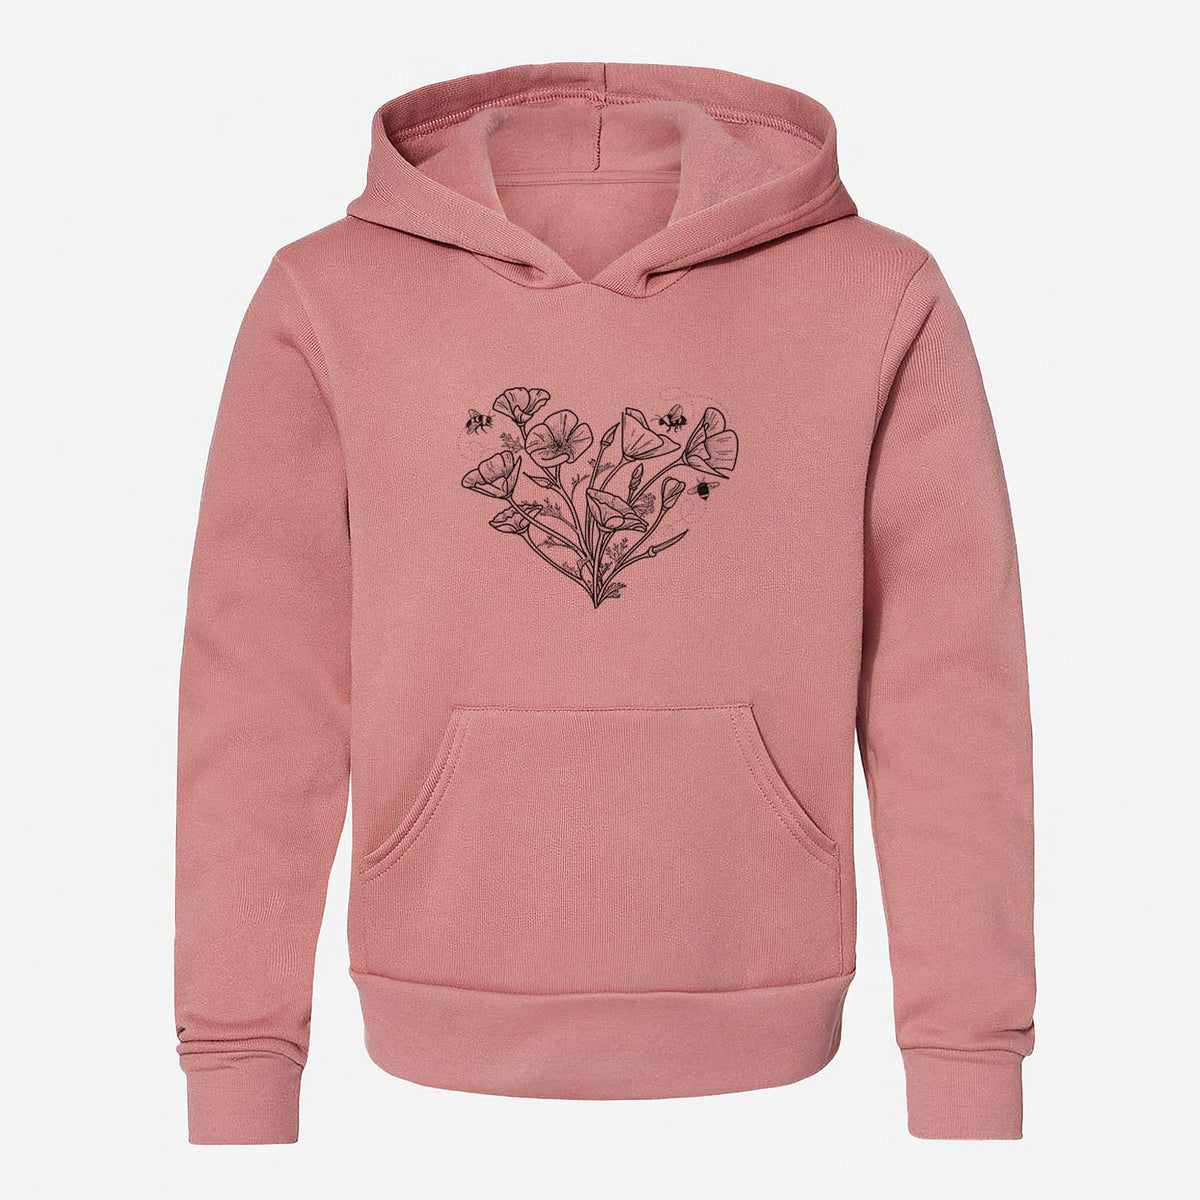 California Poppy Heart - Youth Hoodie Sweatshirt